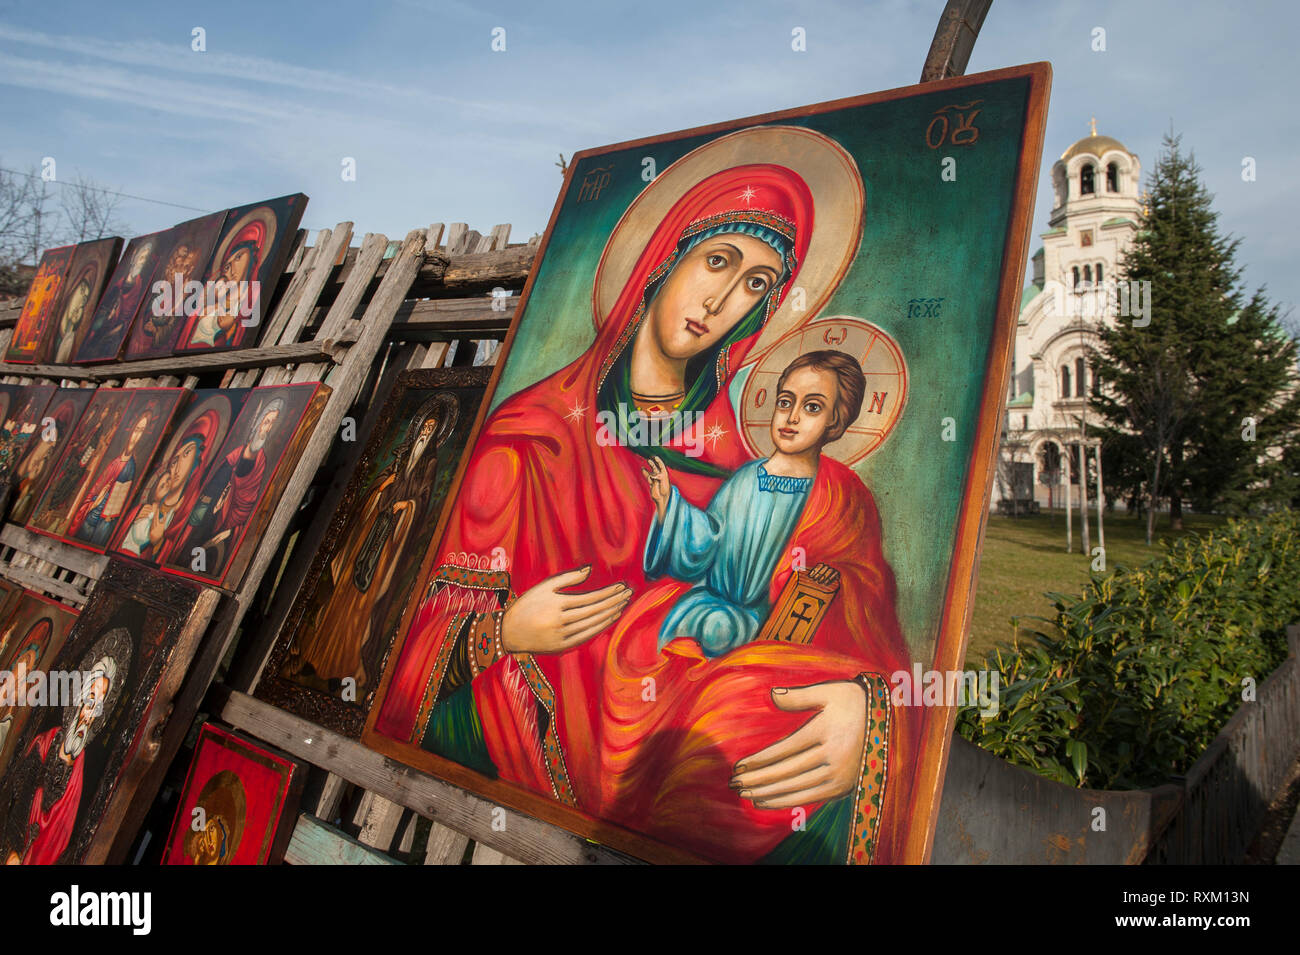 Religiöse Symbole und Kunst für Verkauf an den Flohmarkt in der Nähe von Alexander Newski Kathedrale in Sofia. Bulgarien Stockfoto